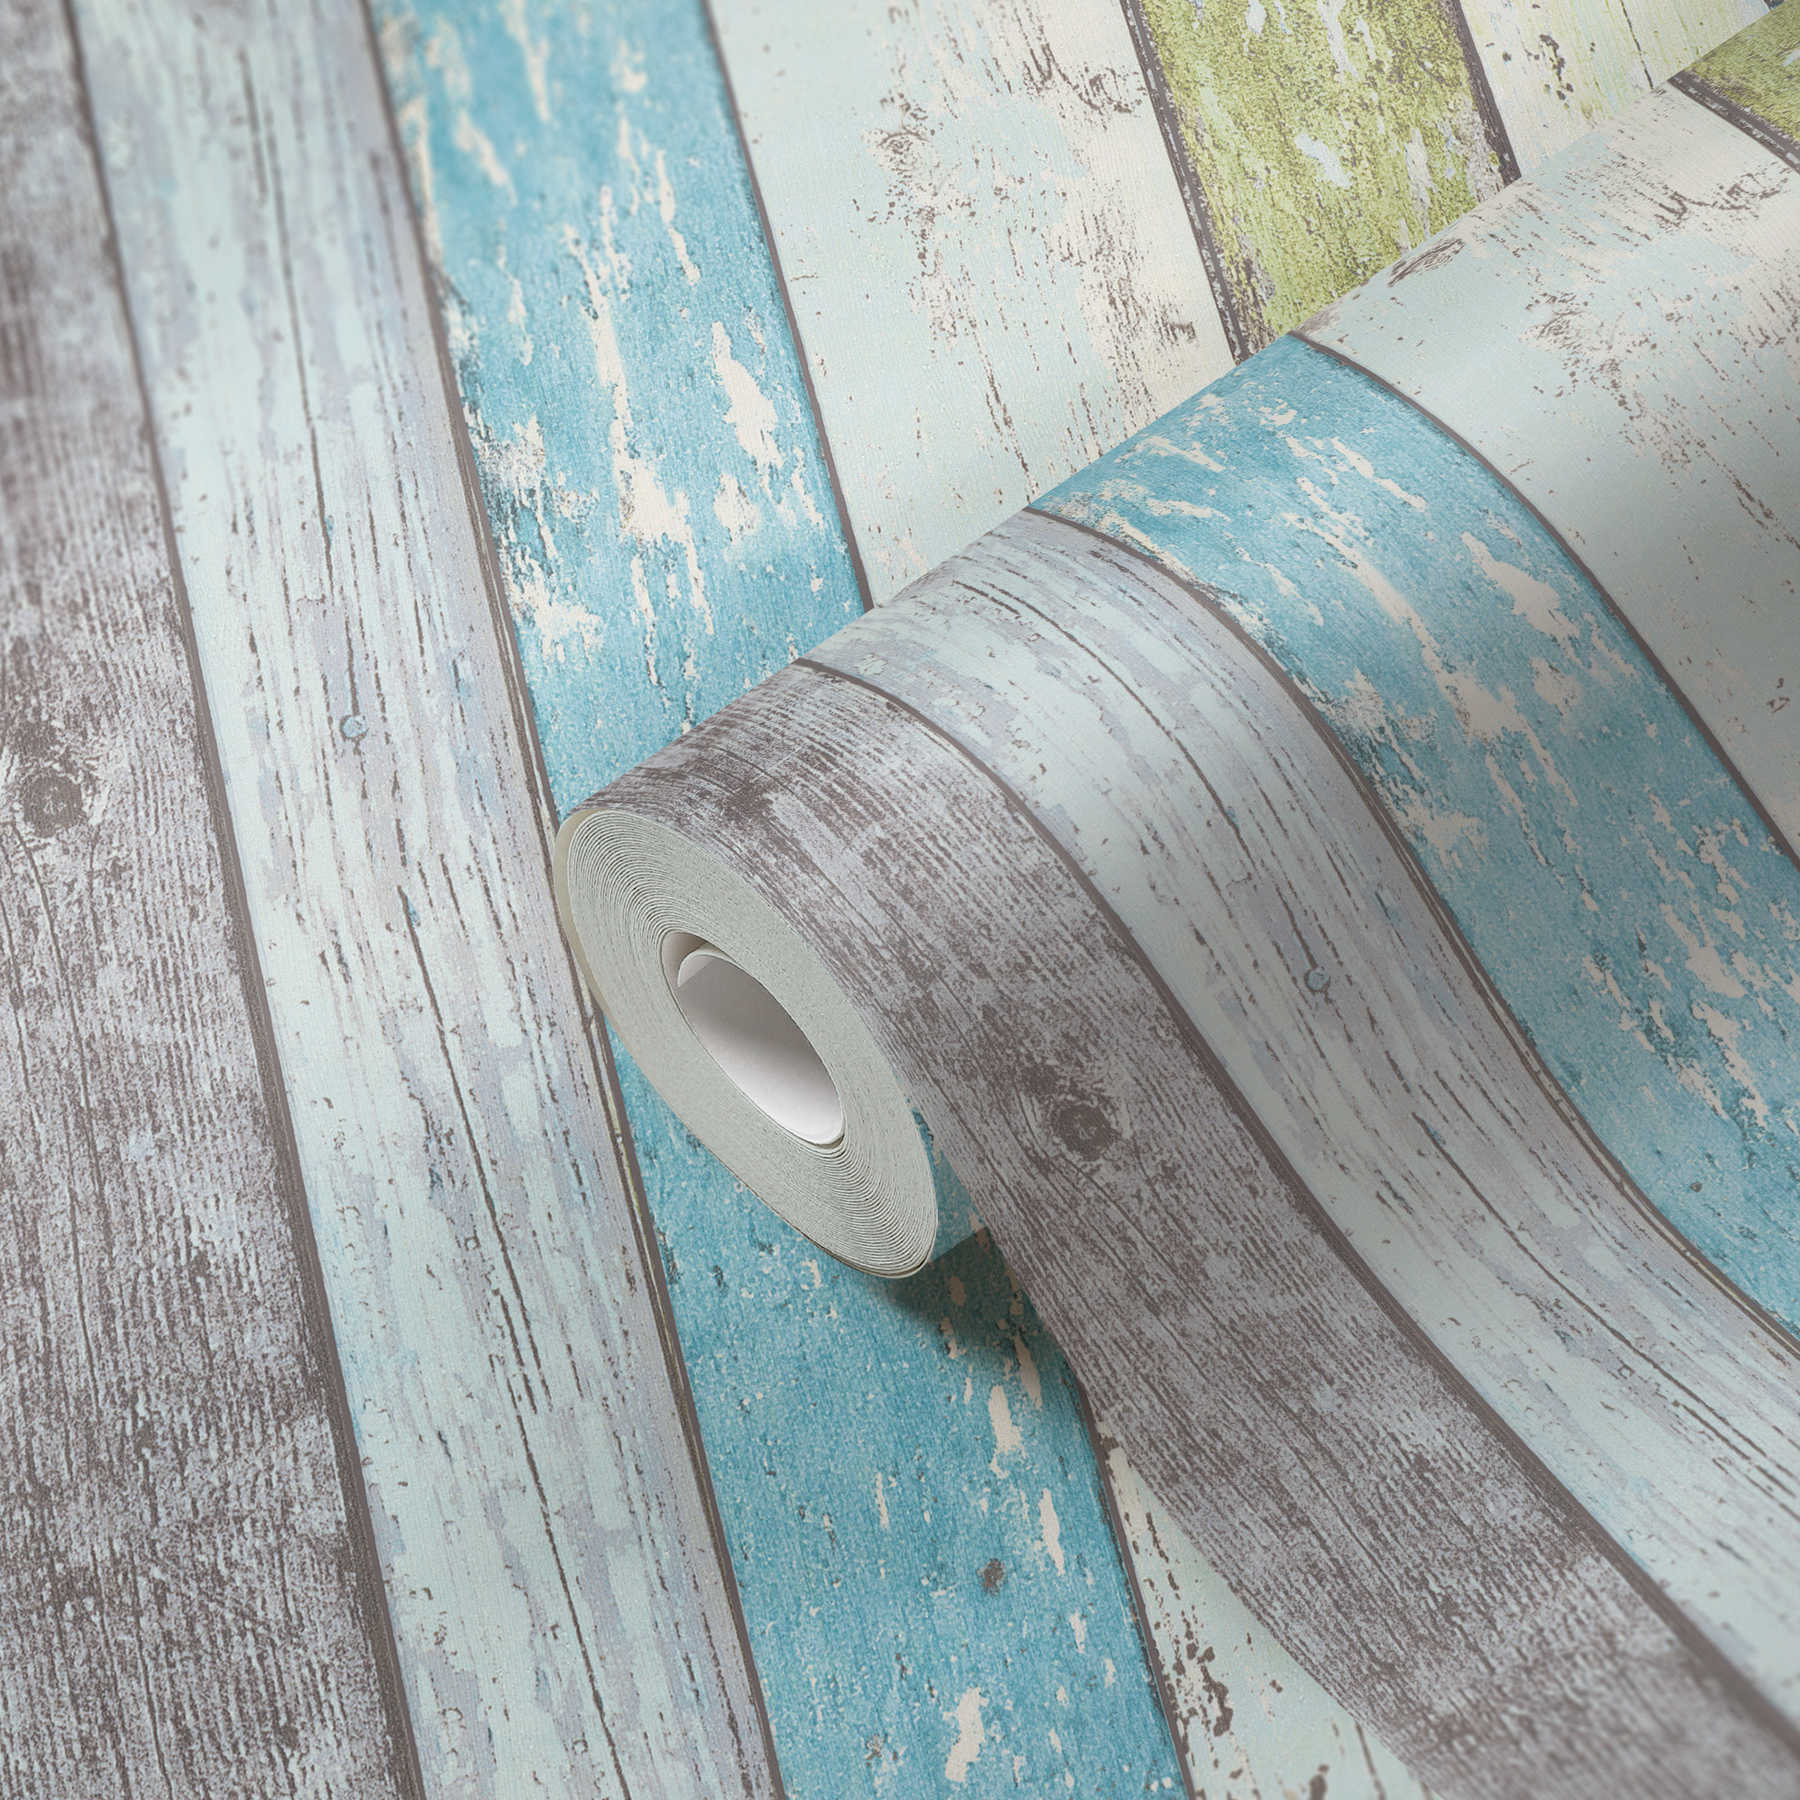             Holz-Tapete mit Used Optik für Vintage & Landhausstil – Blau, Grün, Weiß
        